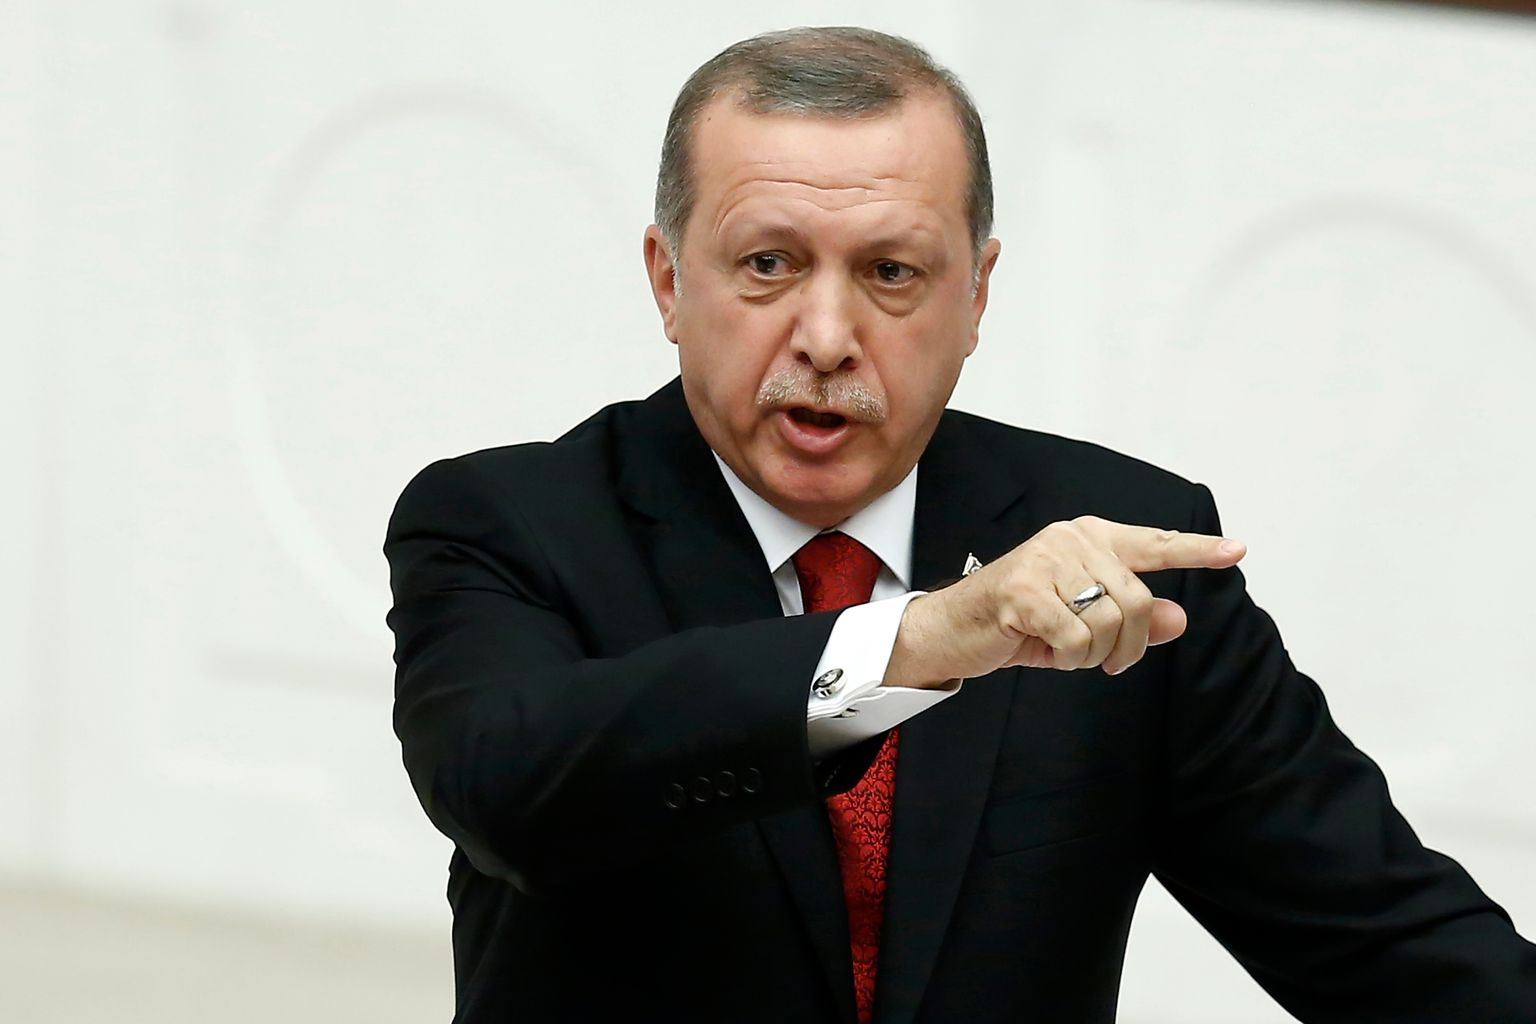 Türgi president Recep Taijp Erdoğan.